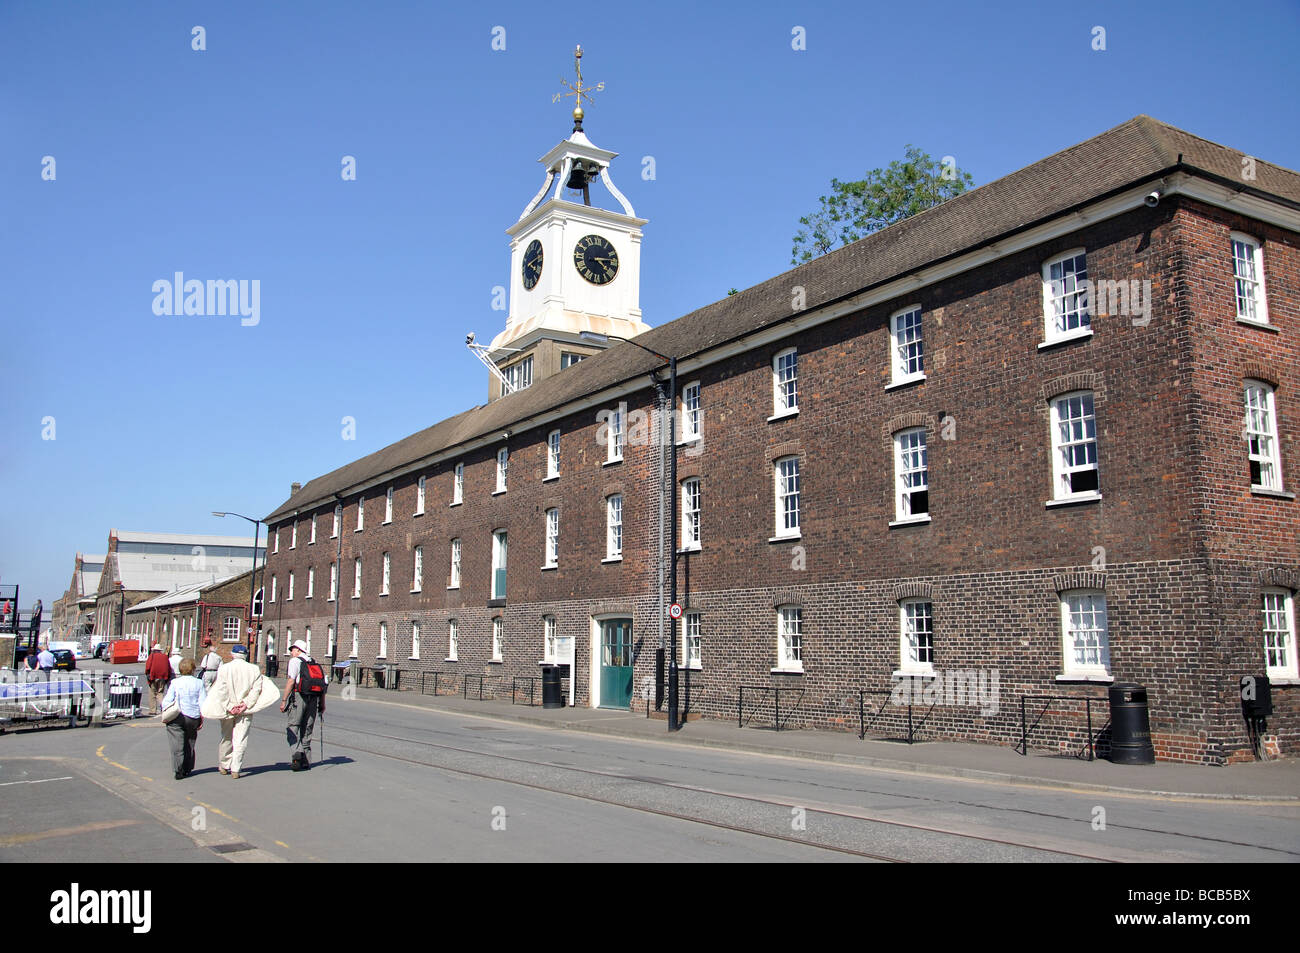 La tour de l'horloge, ancien entrepôt naval, Cran-gevrier, Chatham, Kent, Angleterre, Royaume-Uni Banque D'Images